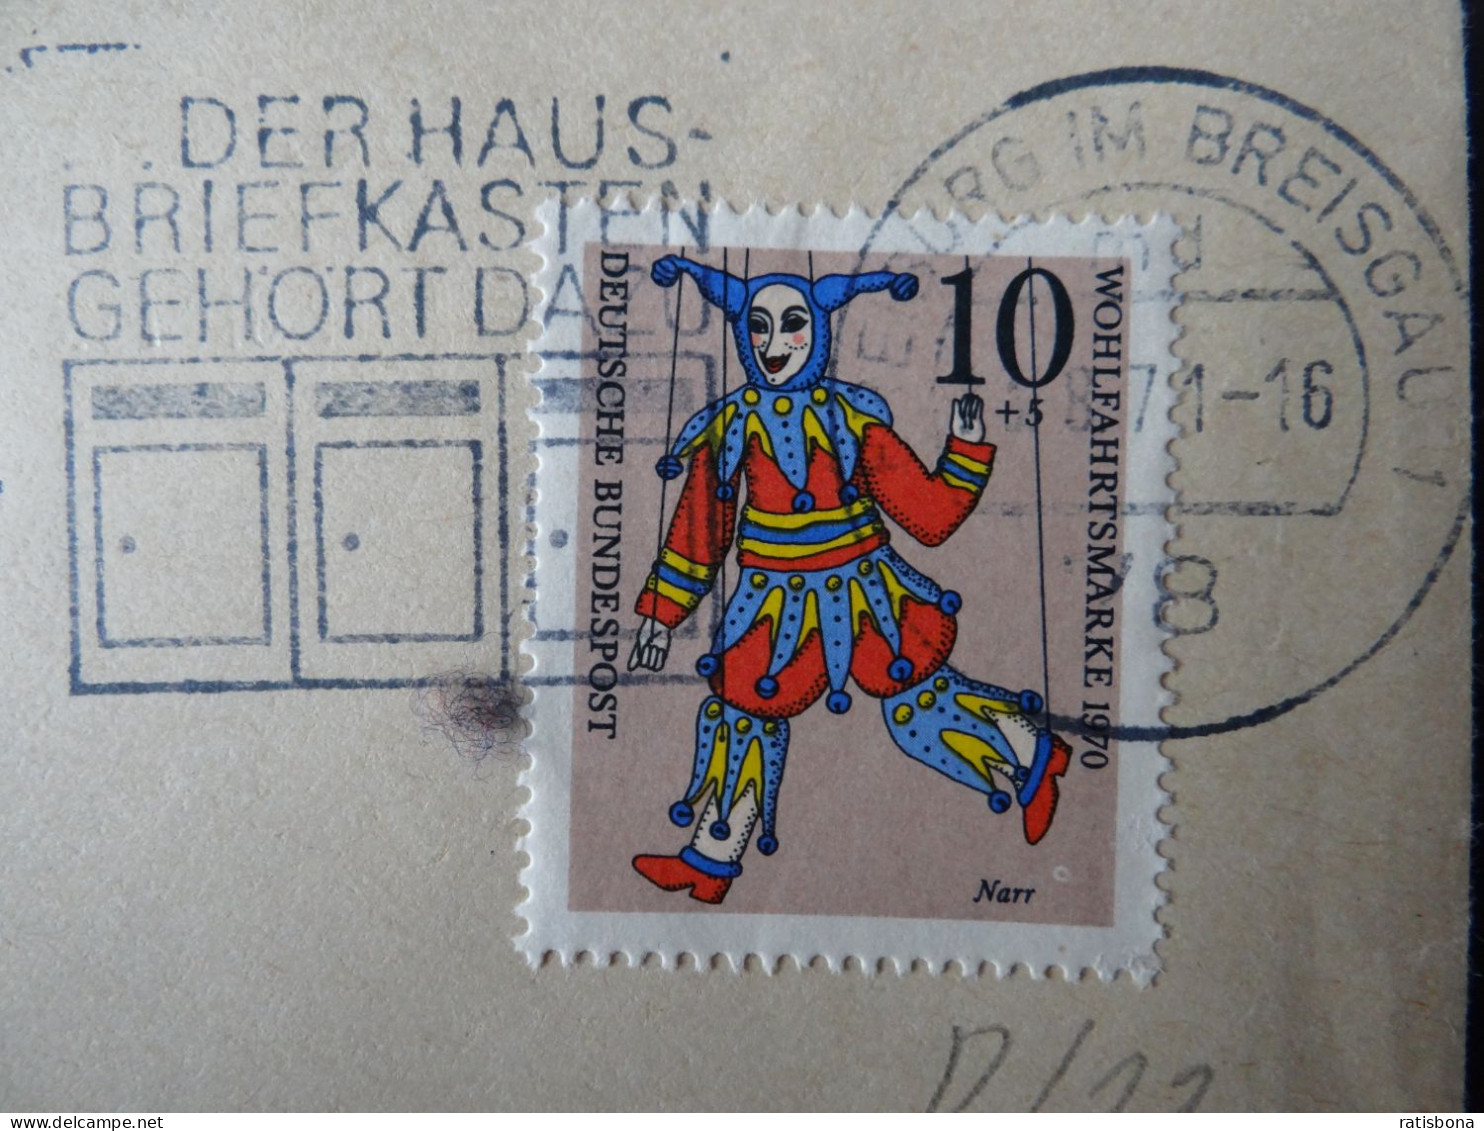 7800 Freiburg I.Breisgau - Der Hausbriefkasten Gehört Dazu - Werbestempel 1971 - Macchine Per Obliterare (EMA)